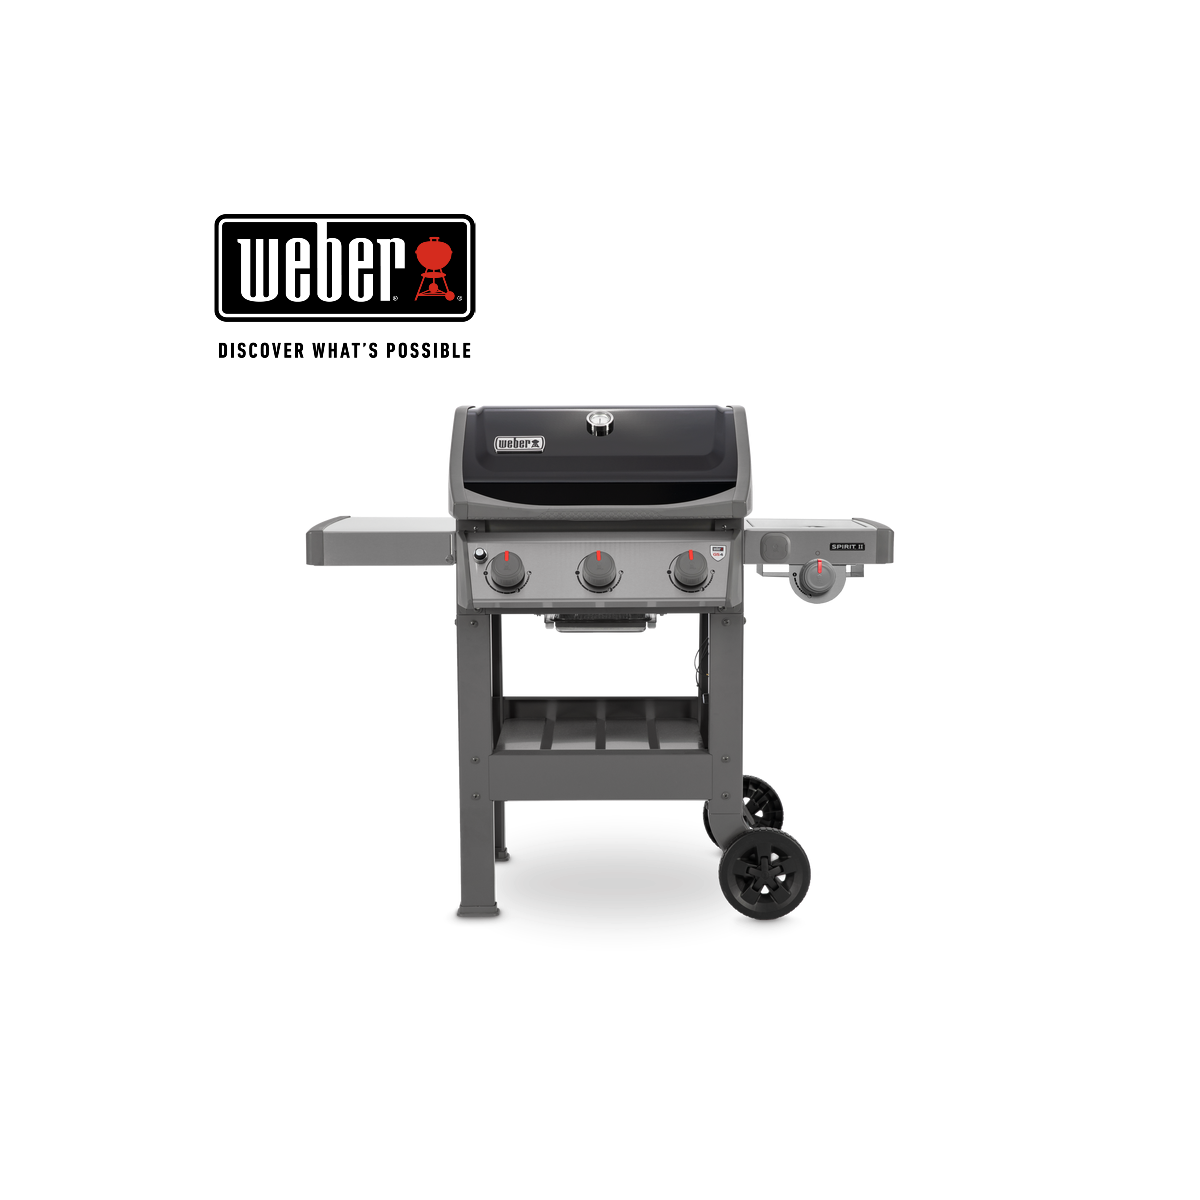 WEBER gas grill SPIRIT II E-320 GBS, 45012169